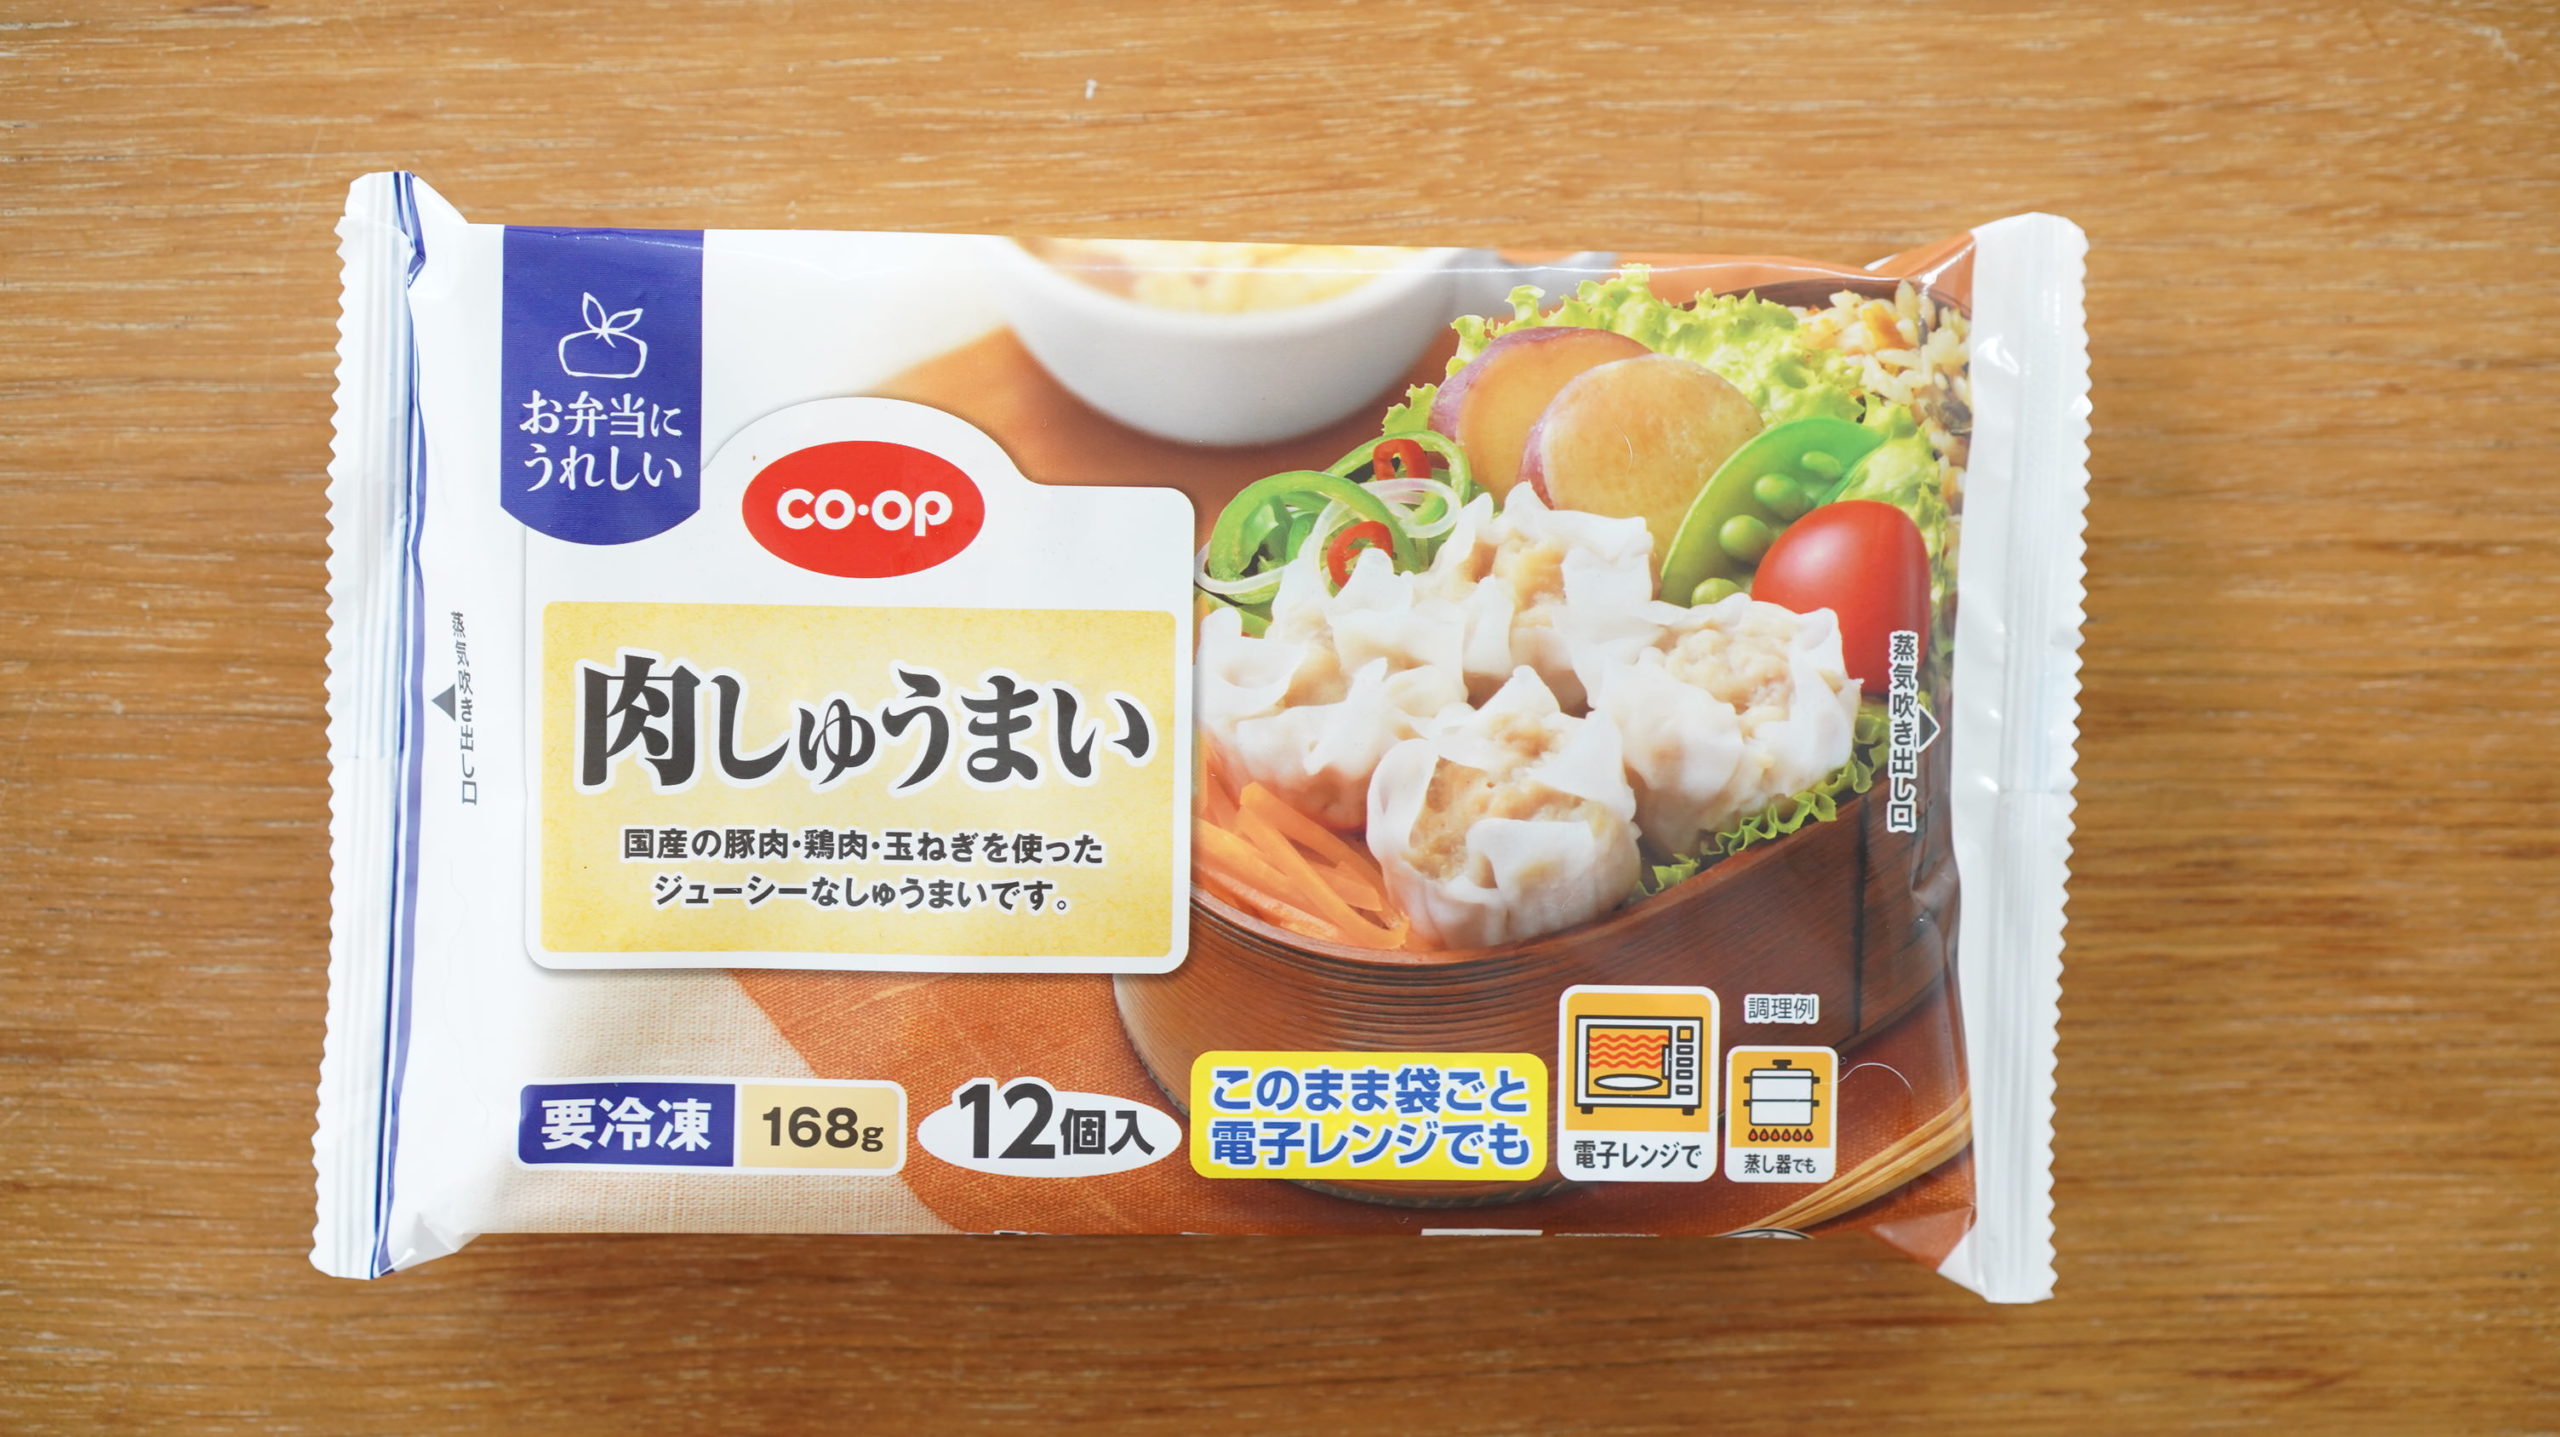 生協coop宅配の冷凍食品「肉しゅうまい」のパッケージ写真